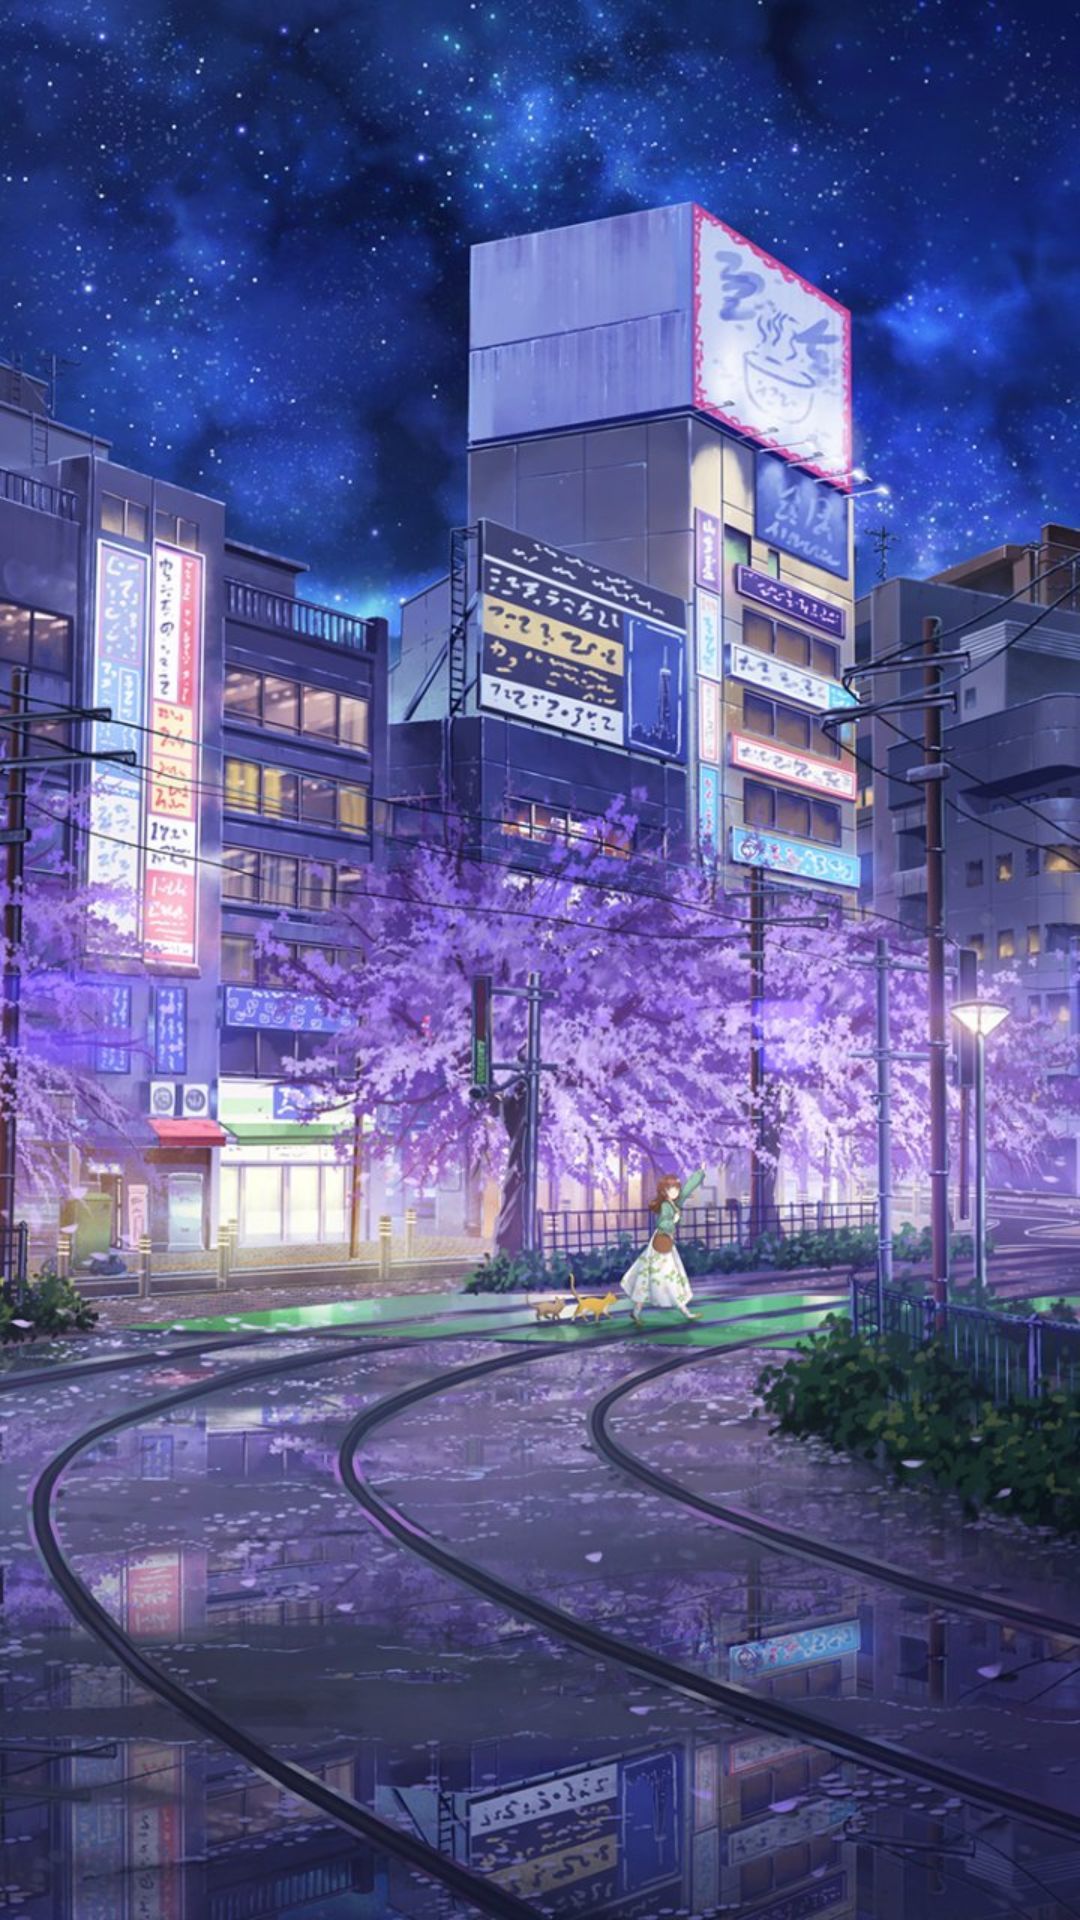 Anime city night with purple trees - Anime city